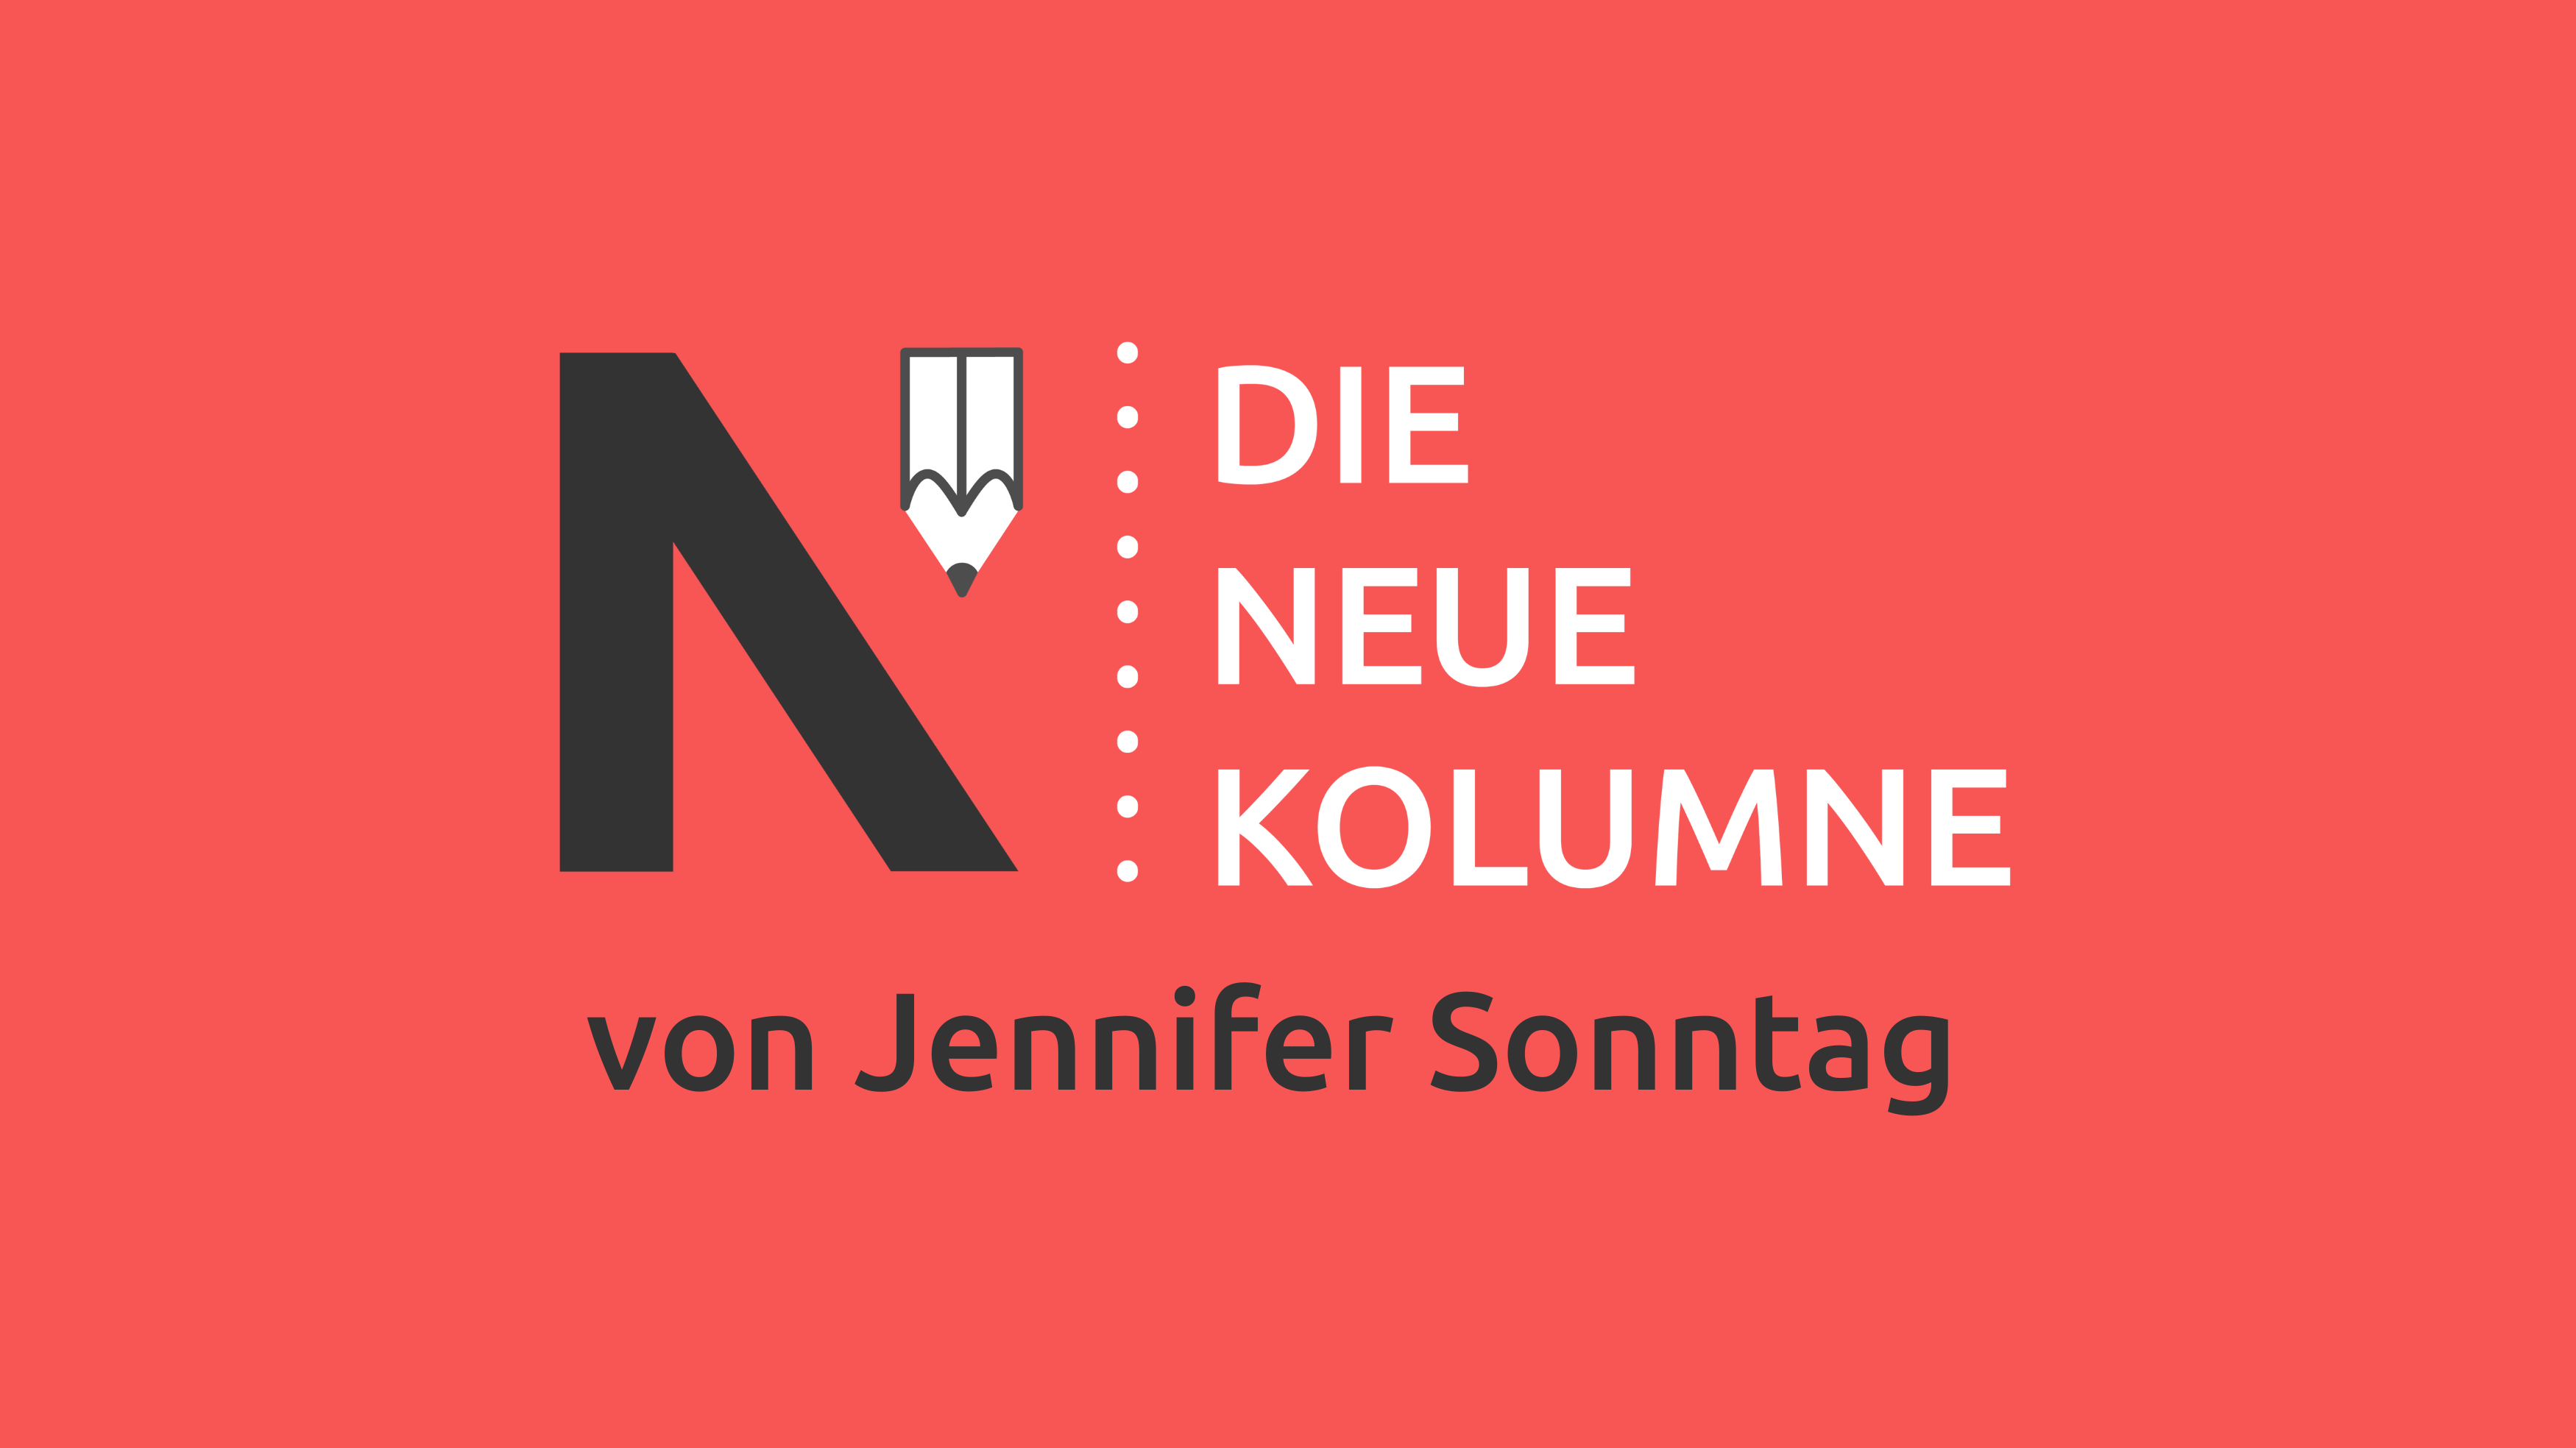 Das Logo von die neue Norm auf rotem Grund. Rechts davon steht: Die Neue Kolumne. Unten steht: Von Jennifer Sonntag.